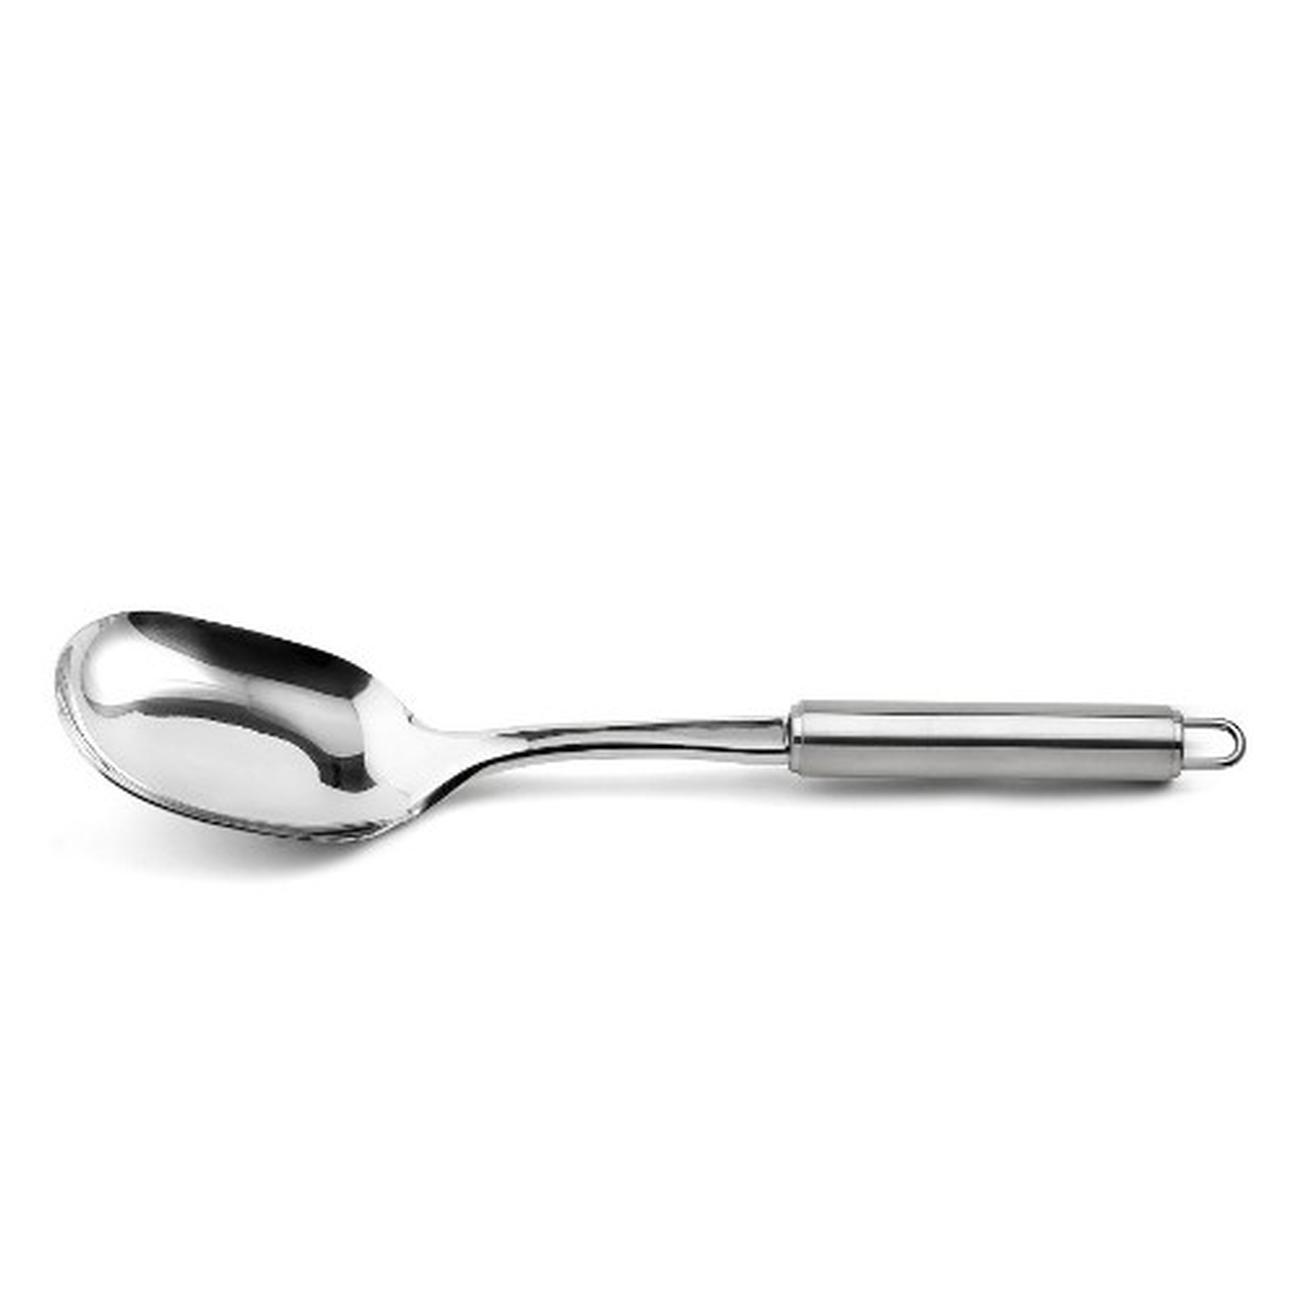 Good Grips Spaghetti spoon - Oxo 1190900V4MLNYK